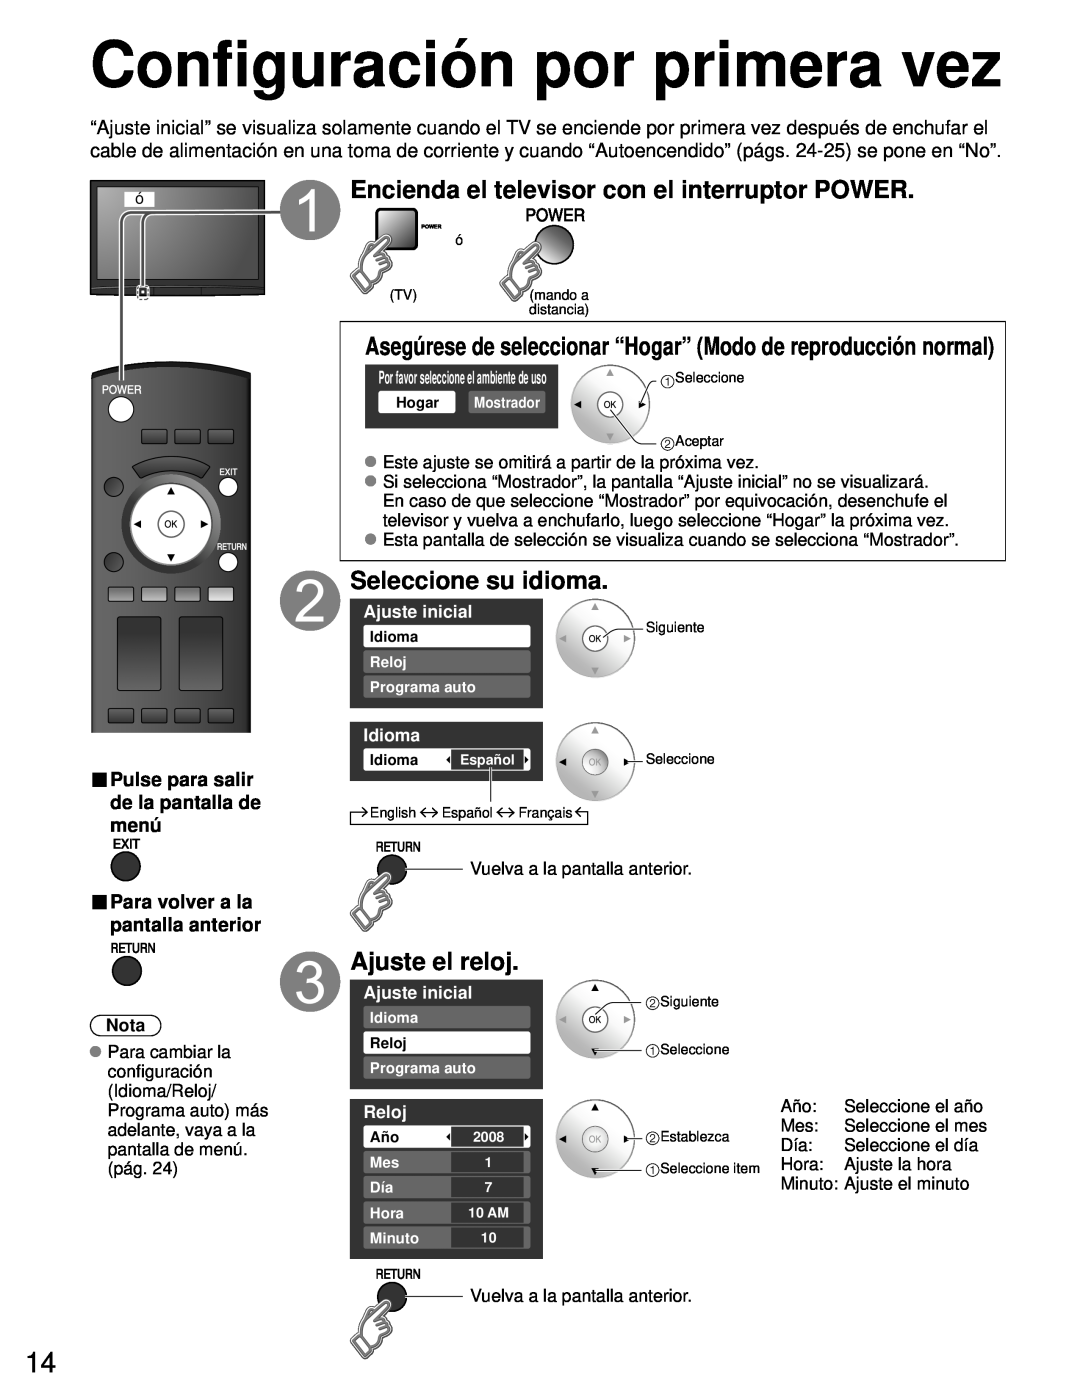 Panasonic TH-50PZ80U Configuración por primera vez, Encienda el televisor con el interruptor POWER, Seleccione su idioma 